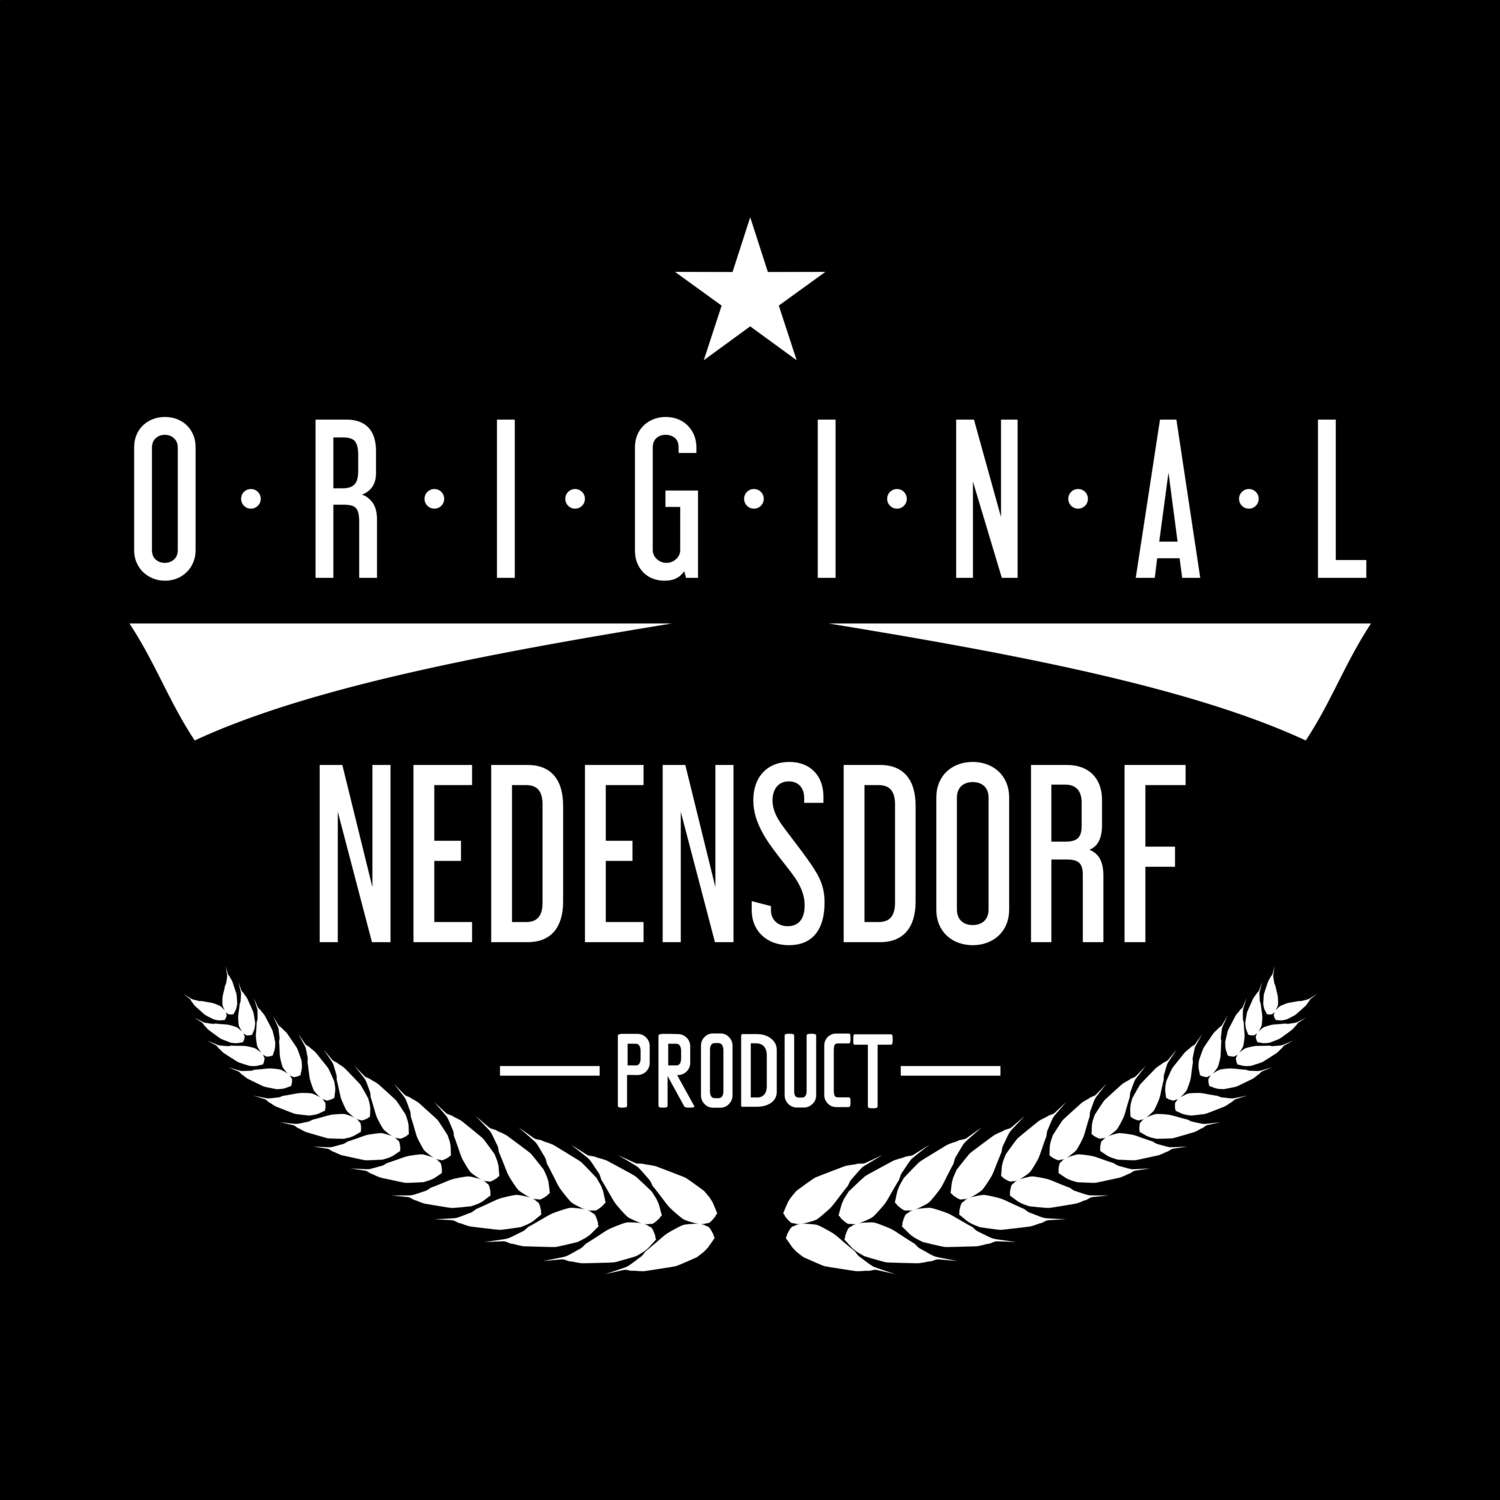 Nedensdorf T-Shirt »Original Product«